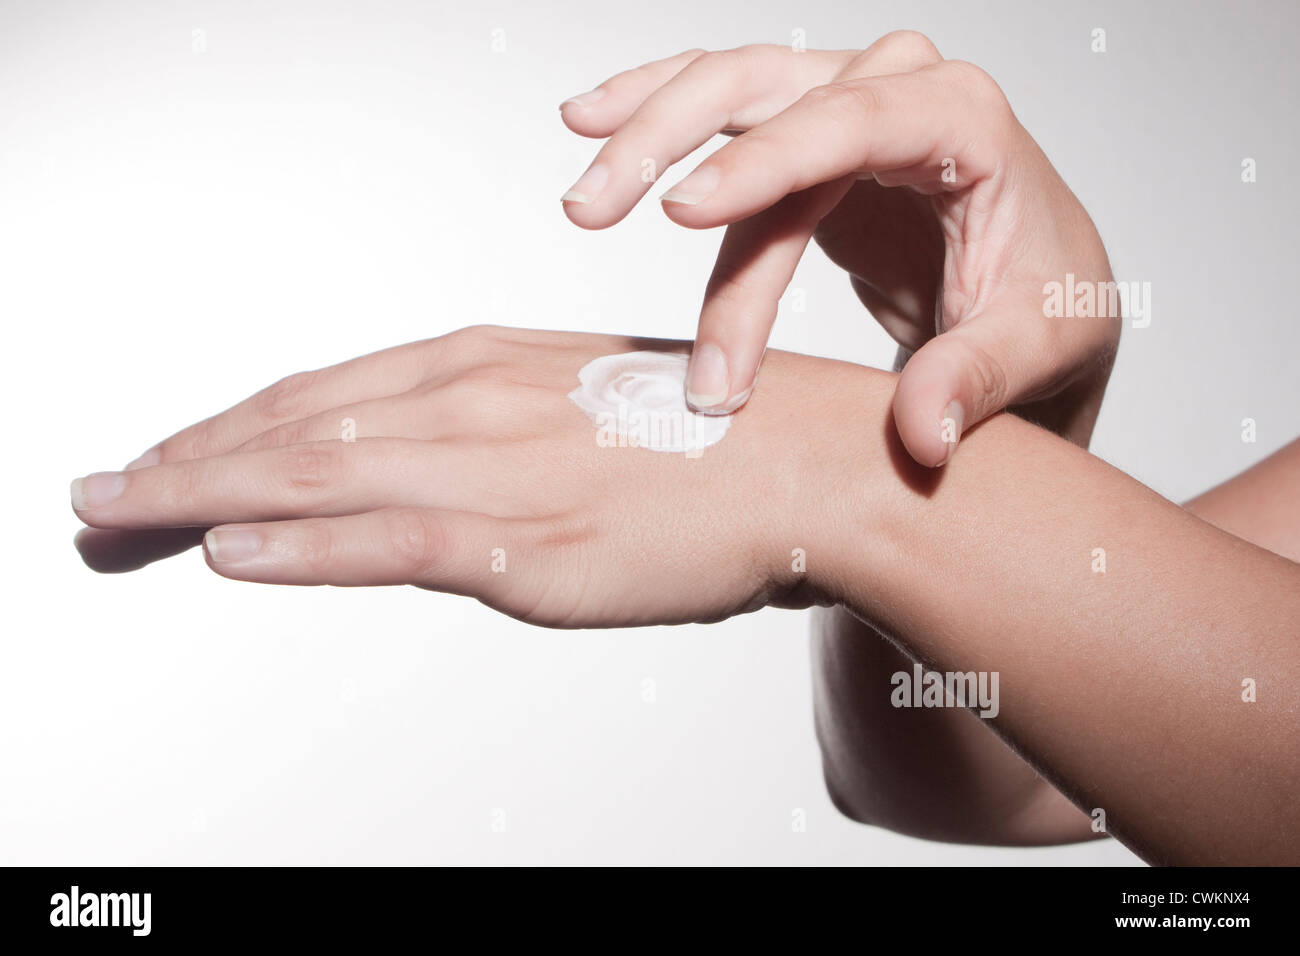 woman hands using skin cream Stock Photo